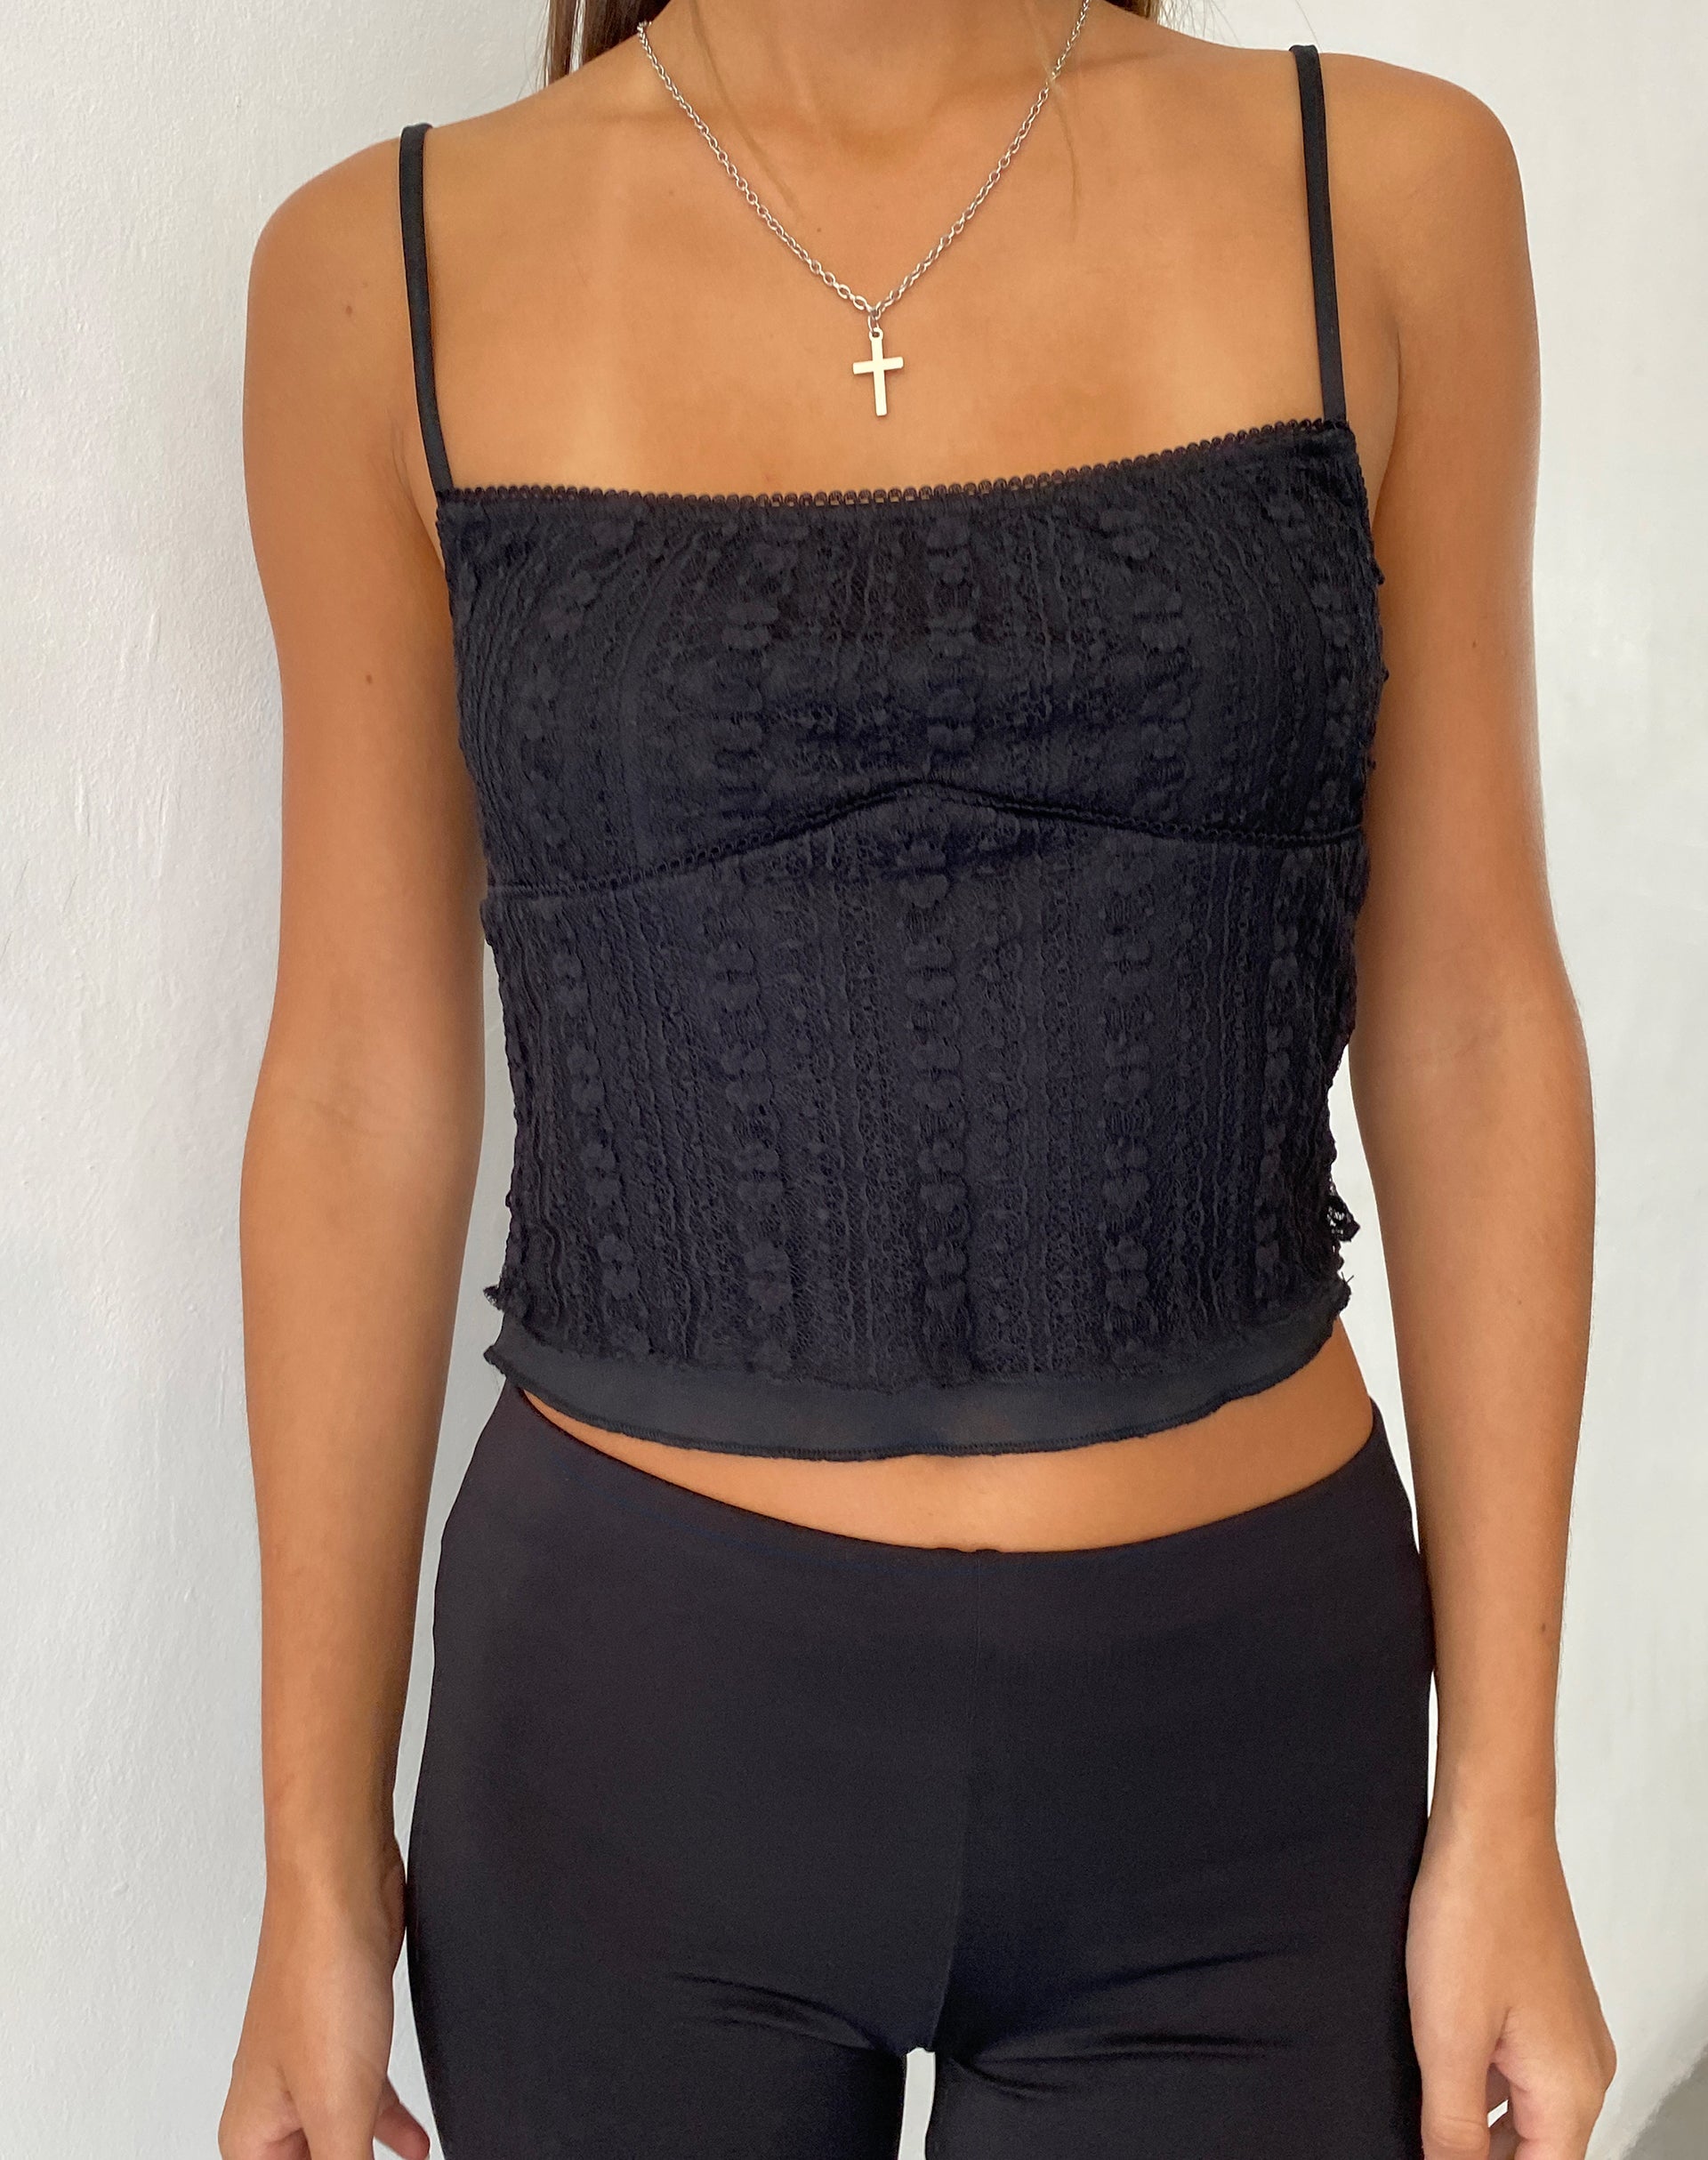 Image of Deska Cami Top in Lace Black